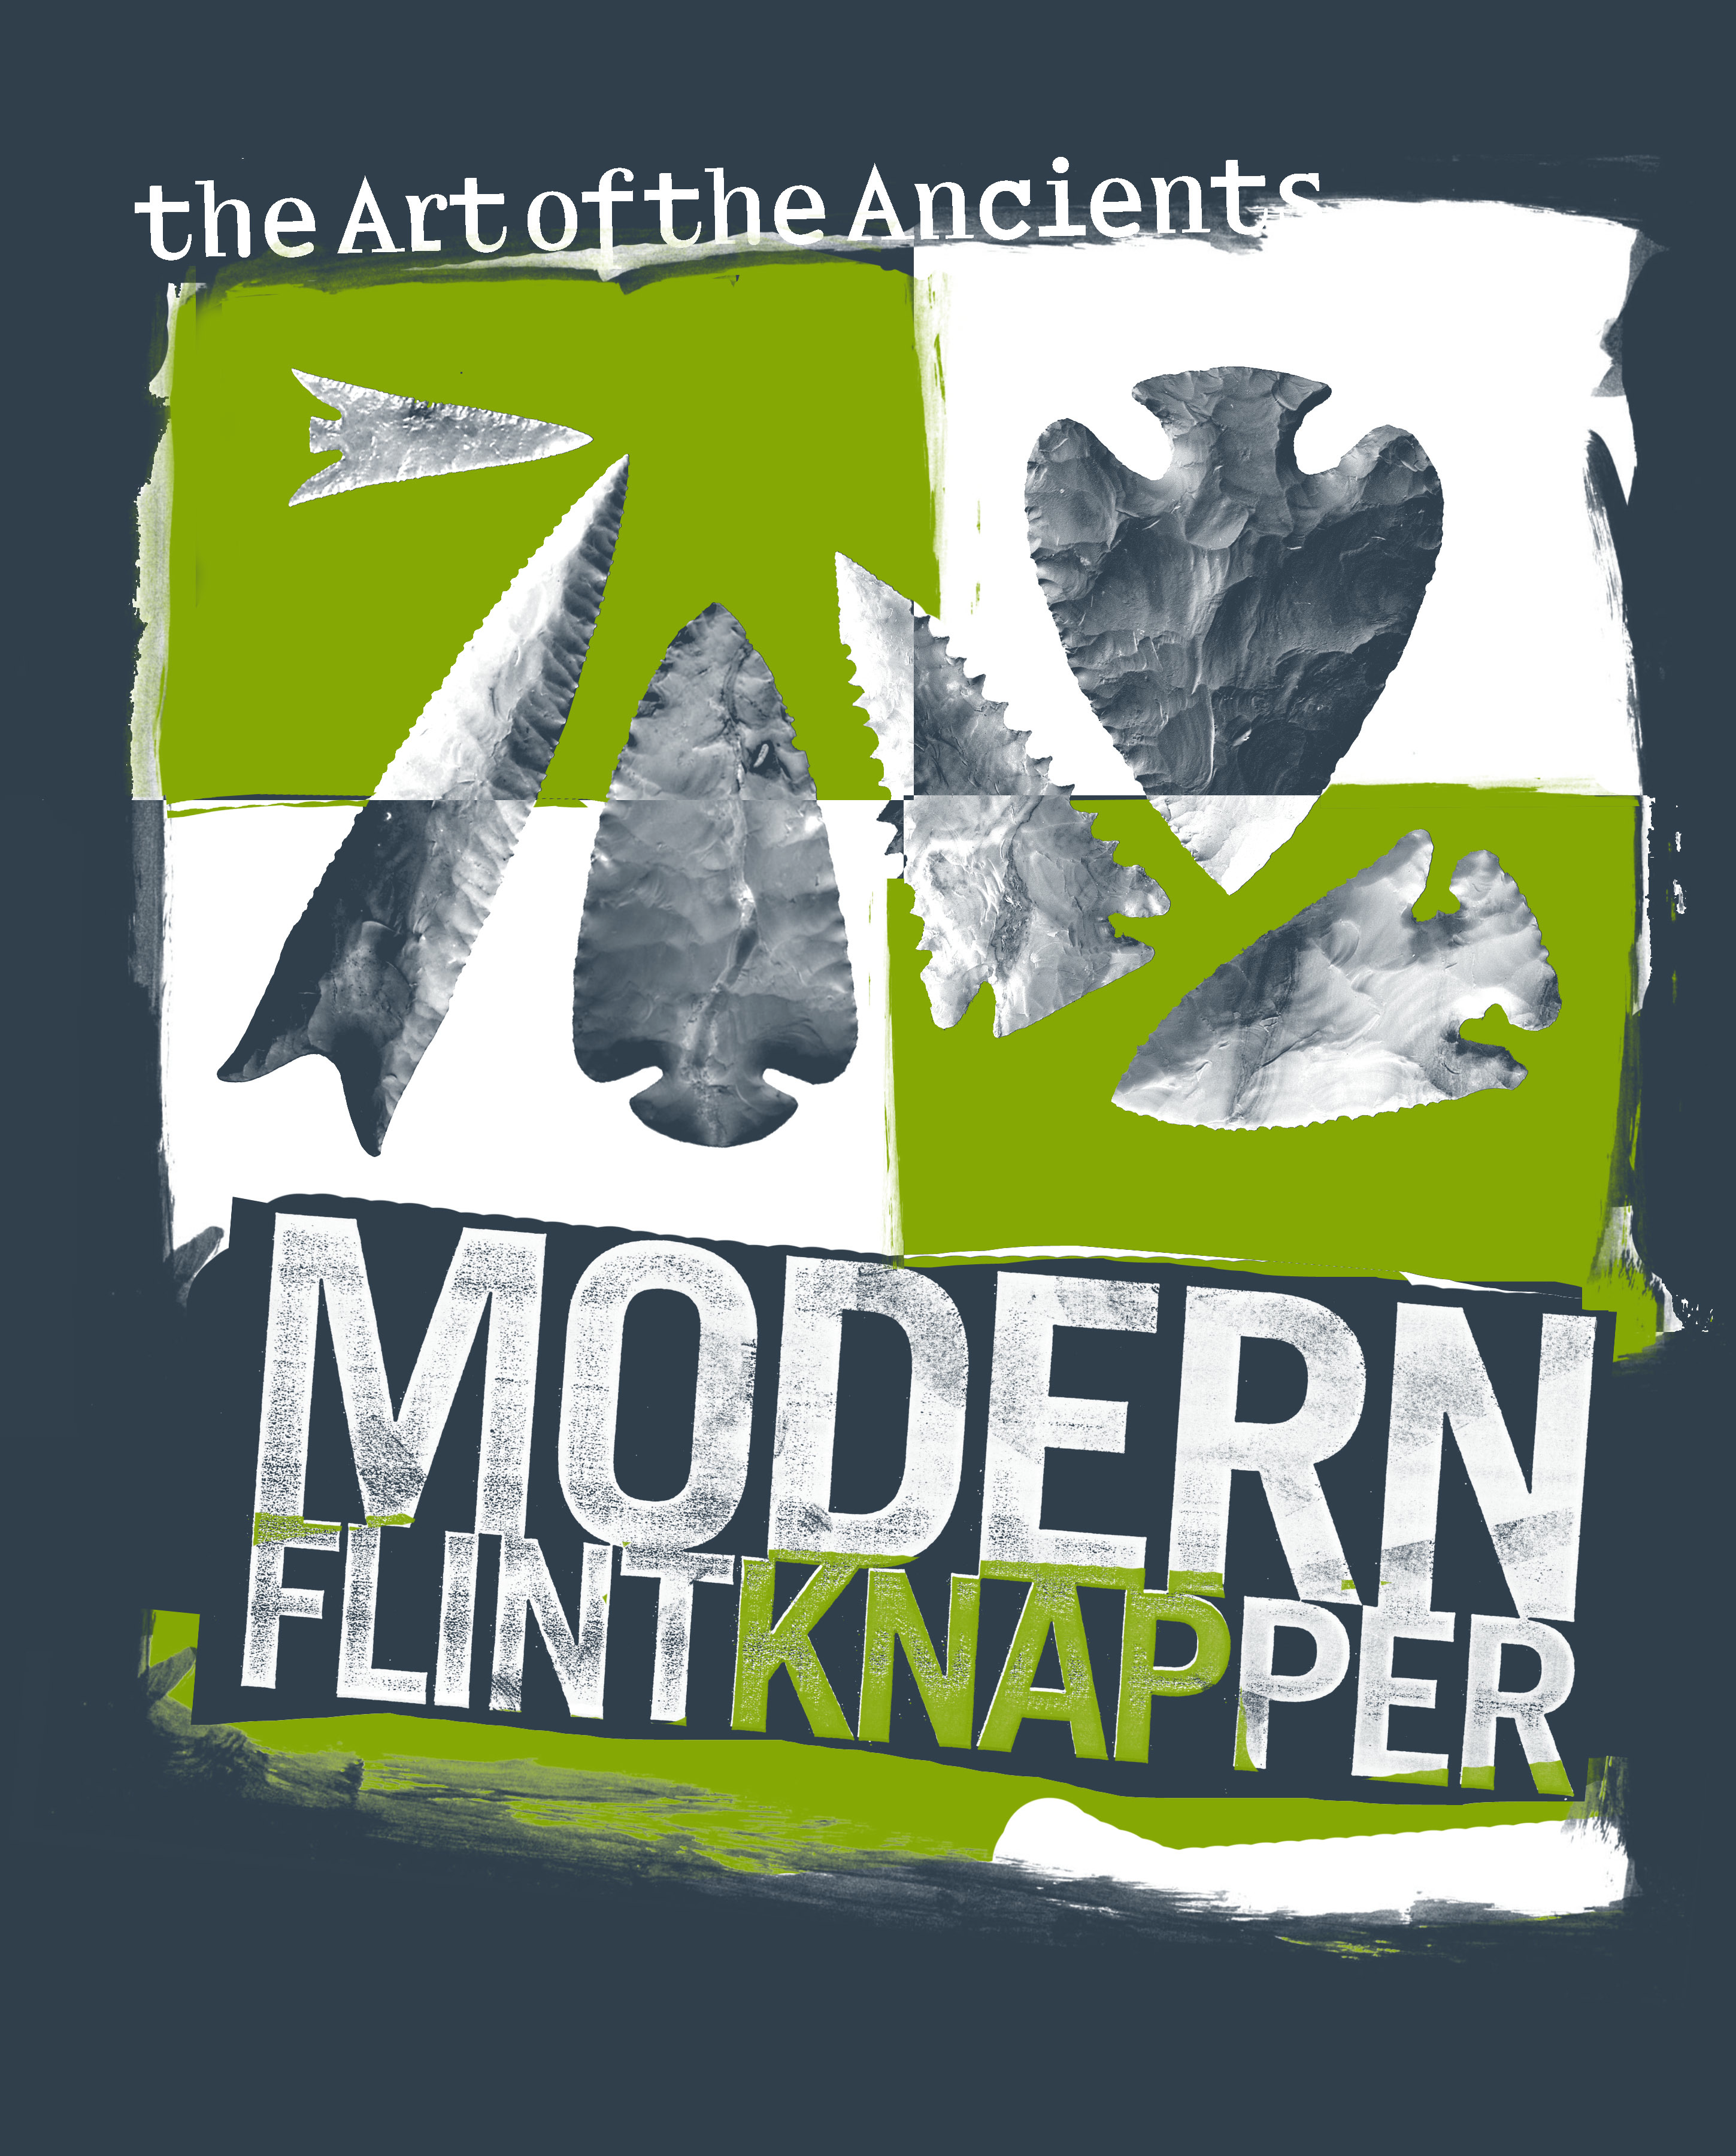 Modern Knapper tShirt